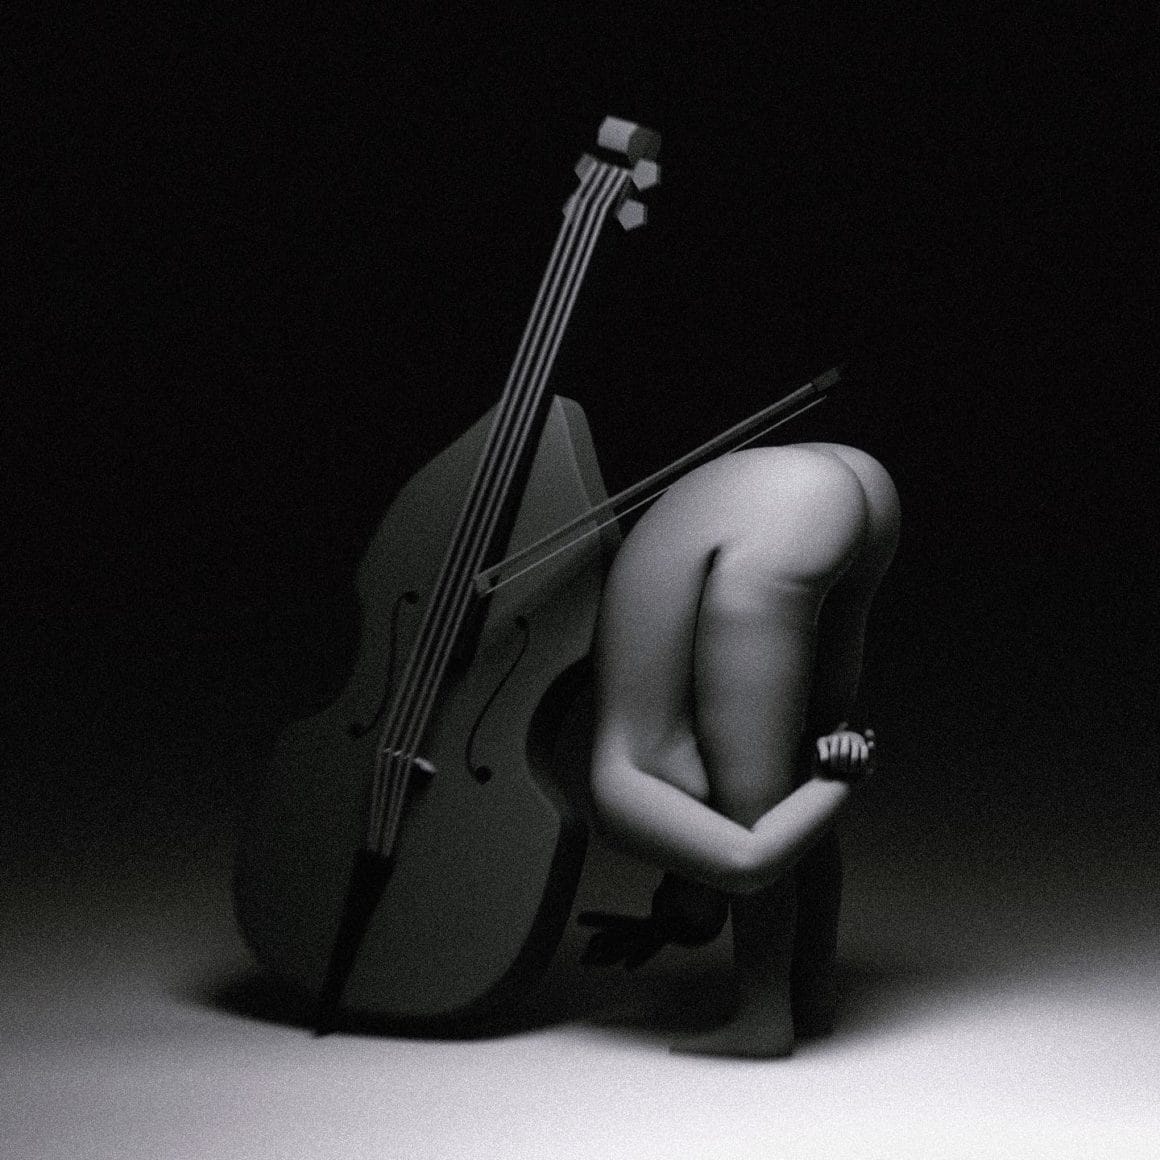 Oeuvre 3D: Une personne est nue debout, accrochée à ses genoux devant un violoncelle. L'oeuvre est en noir et blanc.